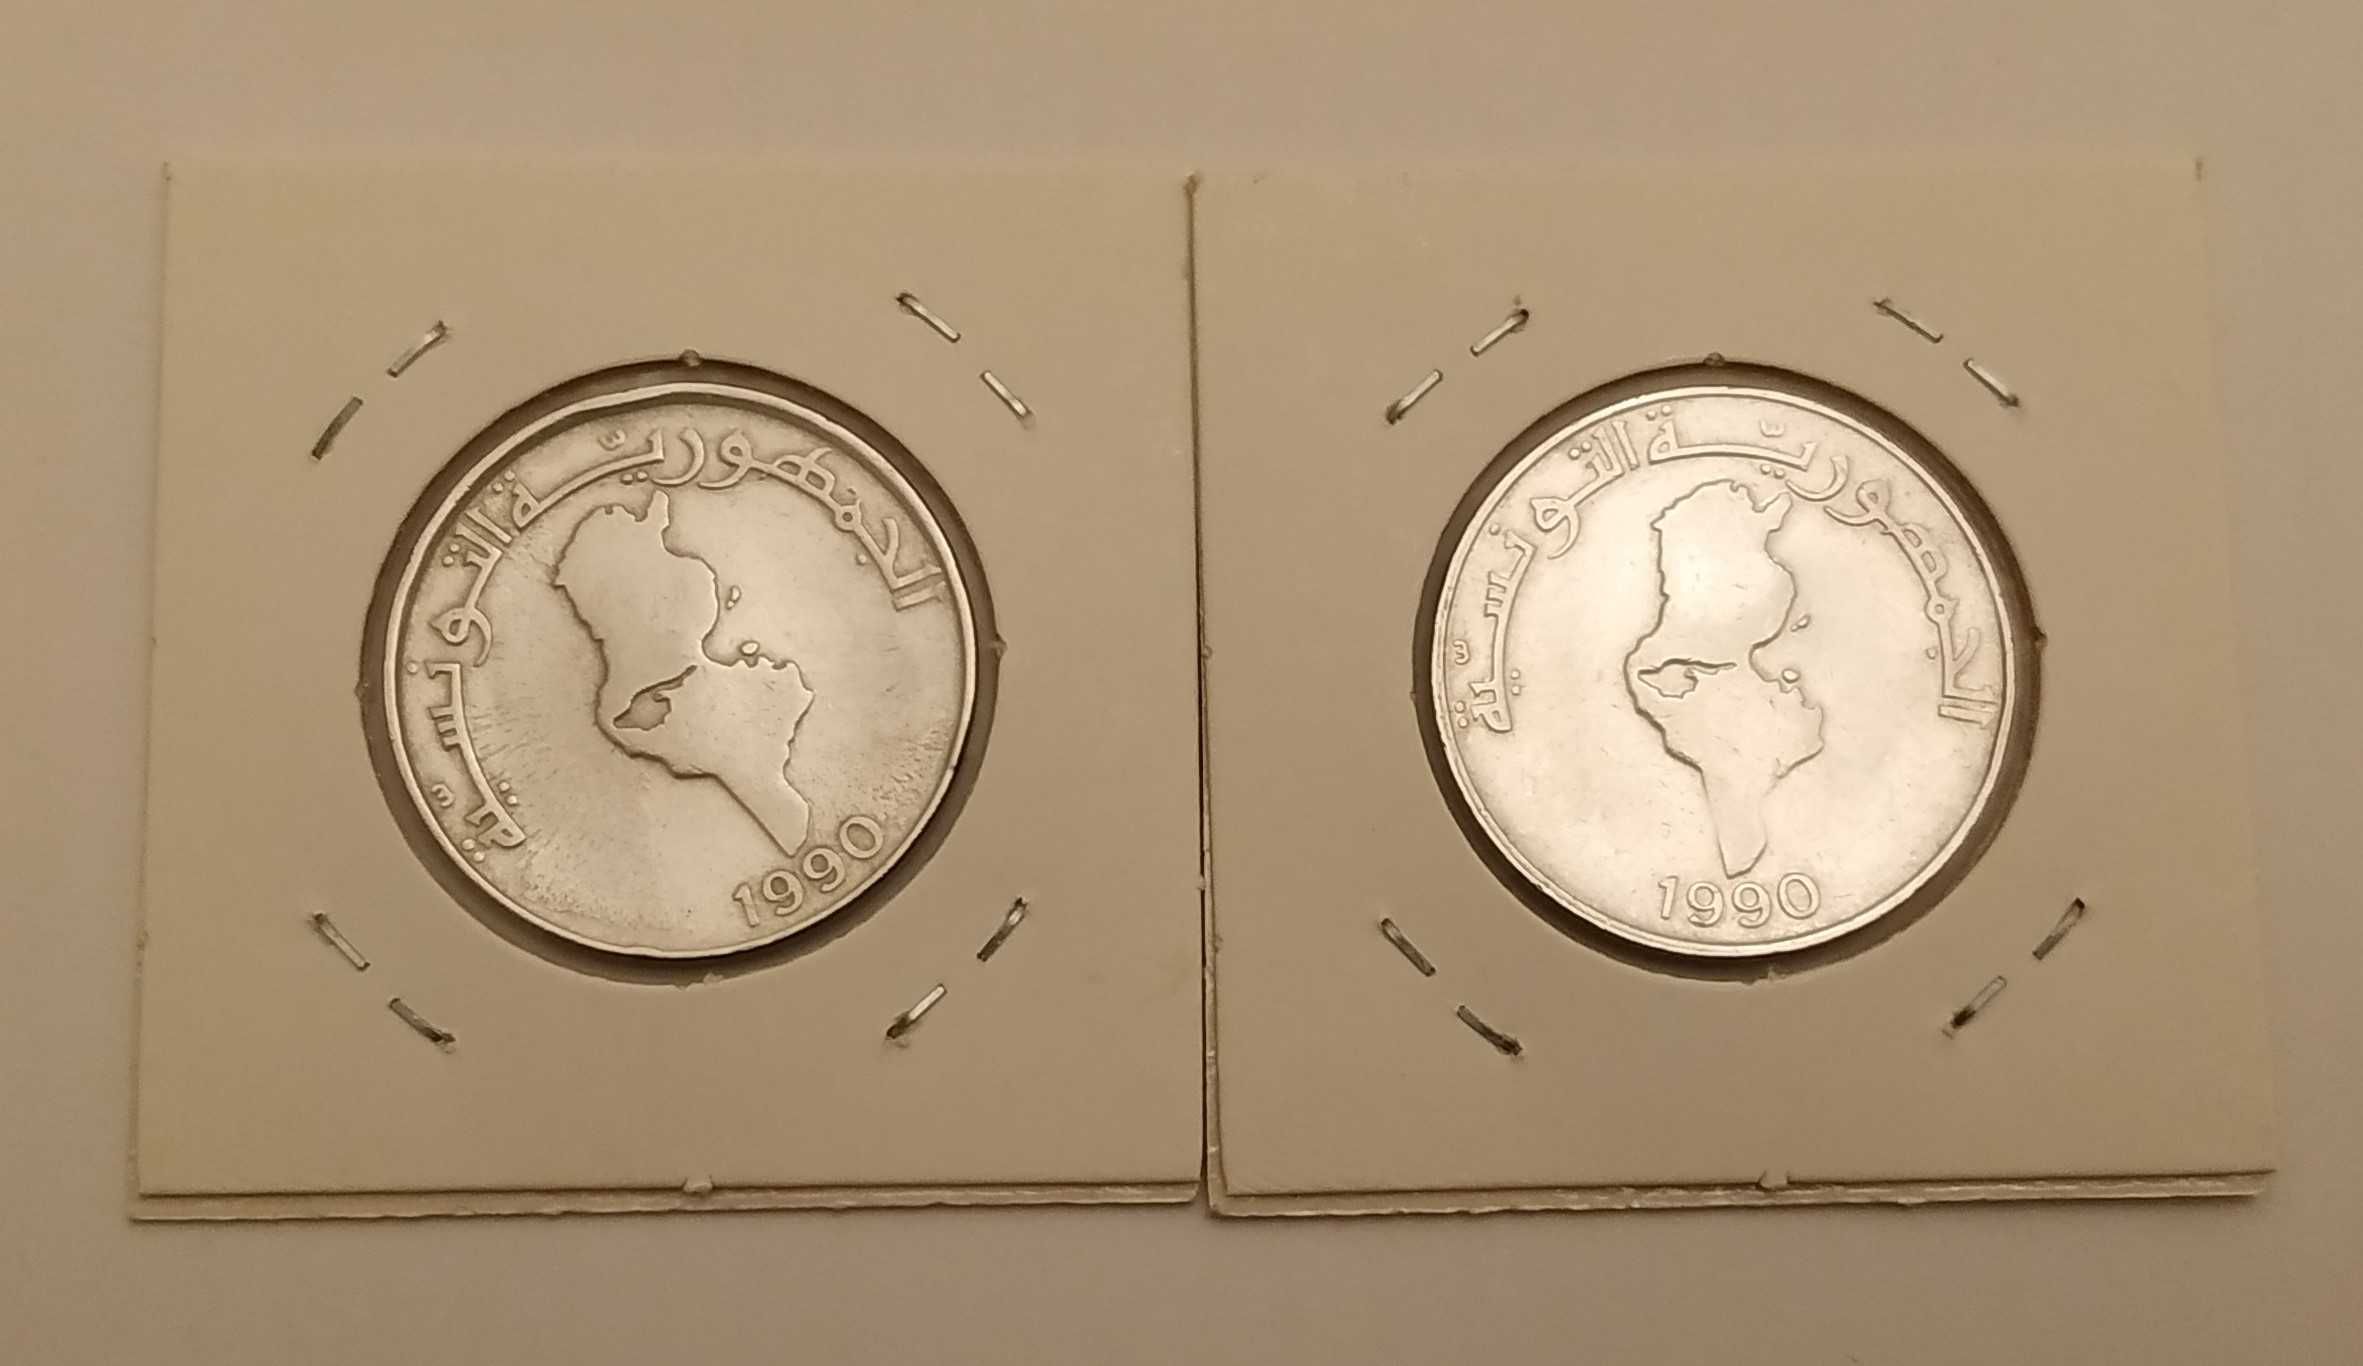 Tunisia 1 dinar 1990 (duas moedas, uma com eixo deslocado)